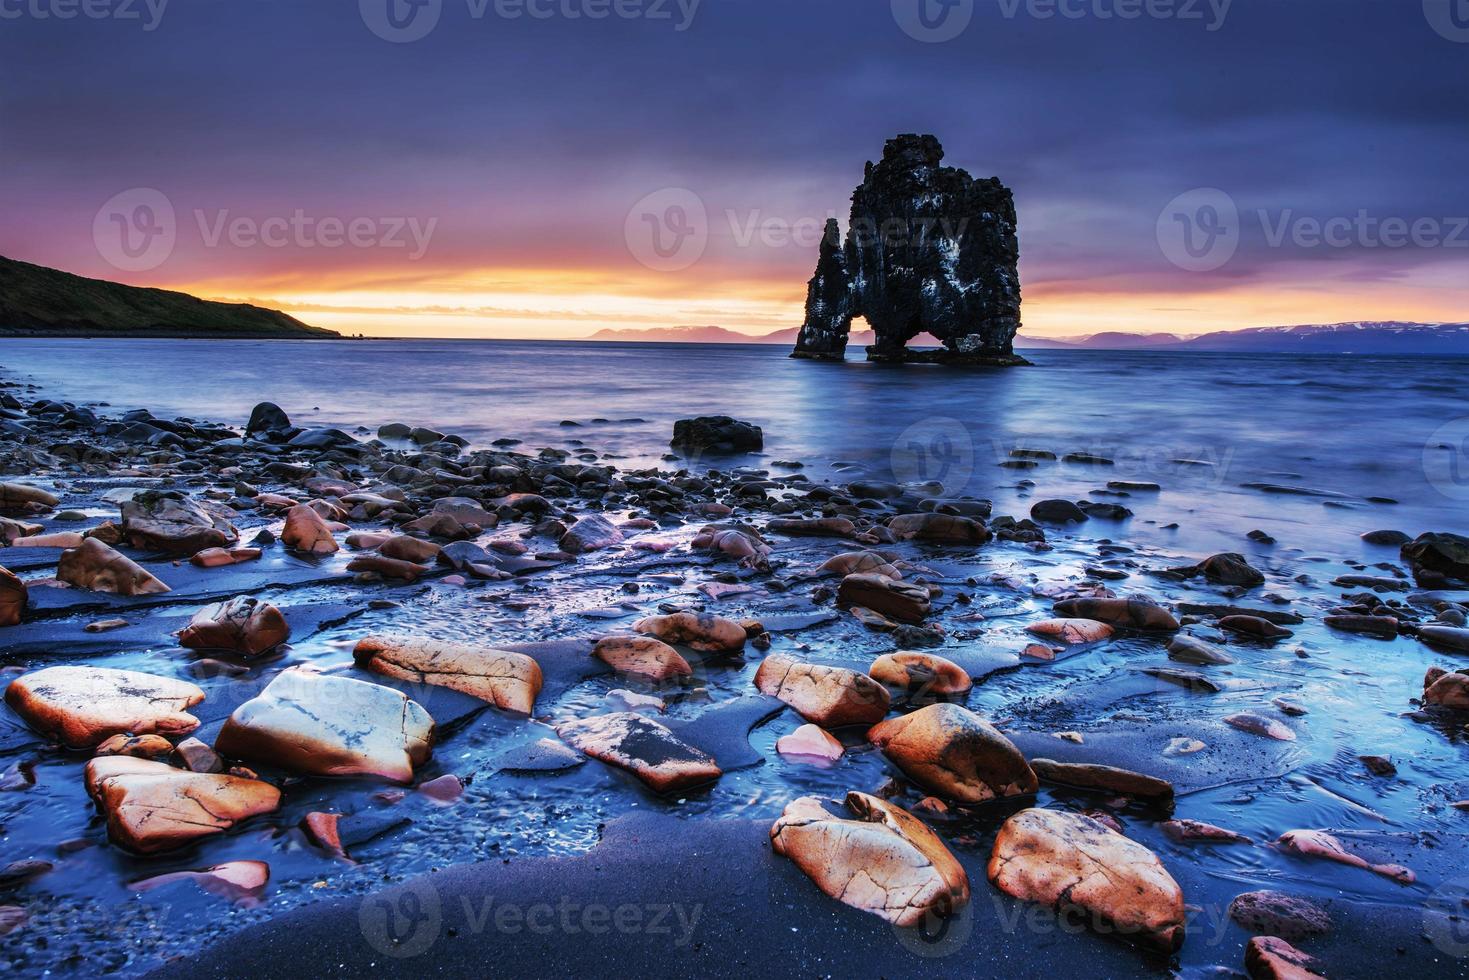 hvitserkur è una spettacolare roccia nel mare sulle coste settentrionali foto